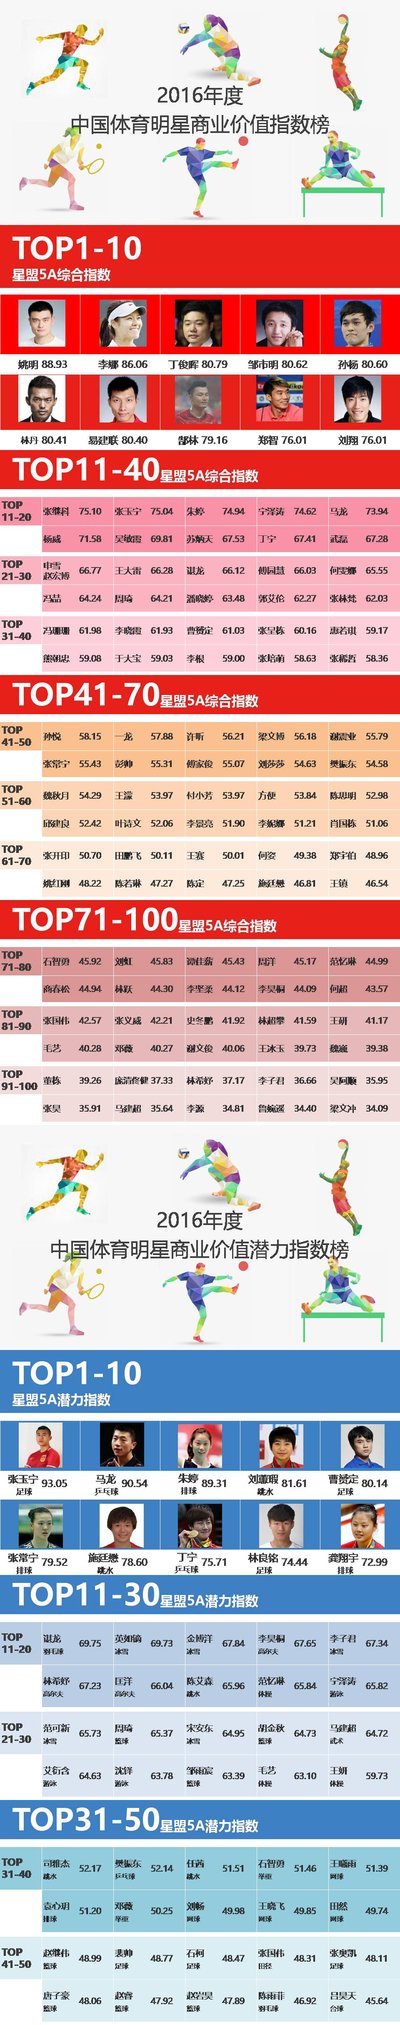 星盟5A指数 - 2016年度中国体育明星商业价值指数榜单